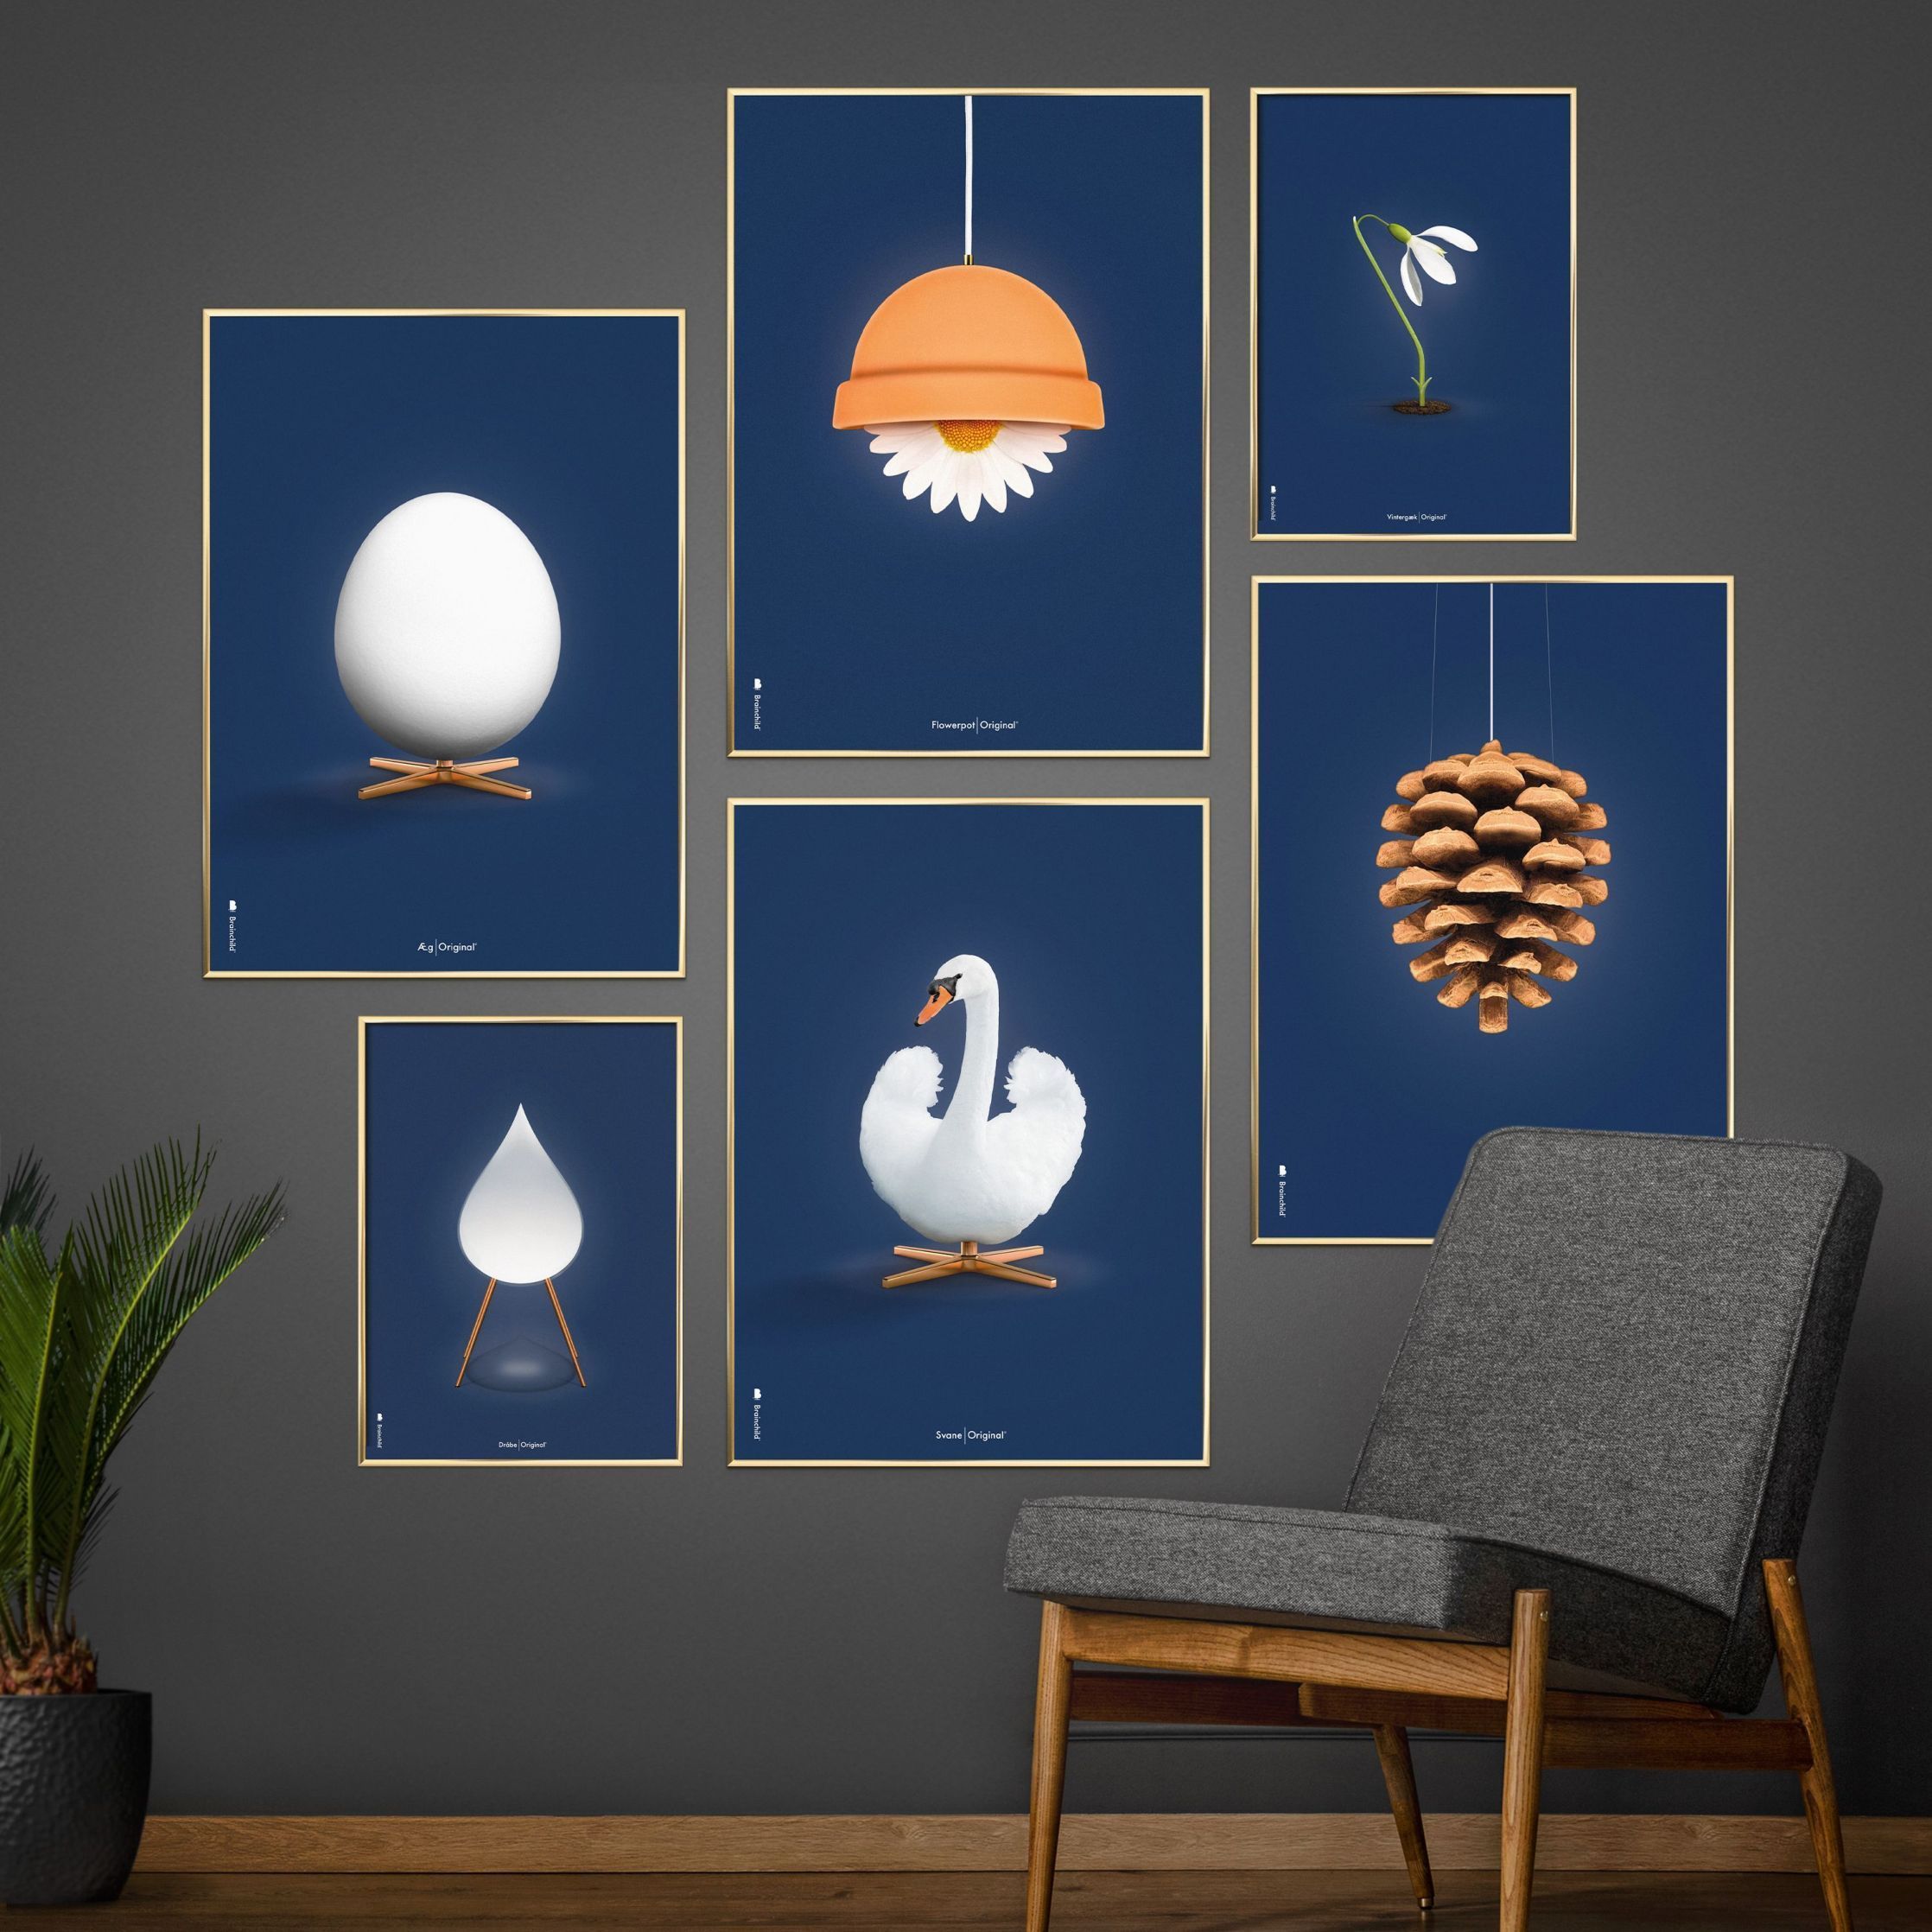 Brainchild Swan Classic Affisch, ram i svart -målat trä A5, mörkblå bakgrund